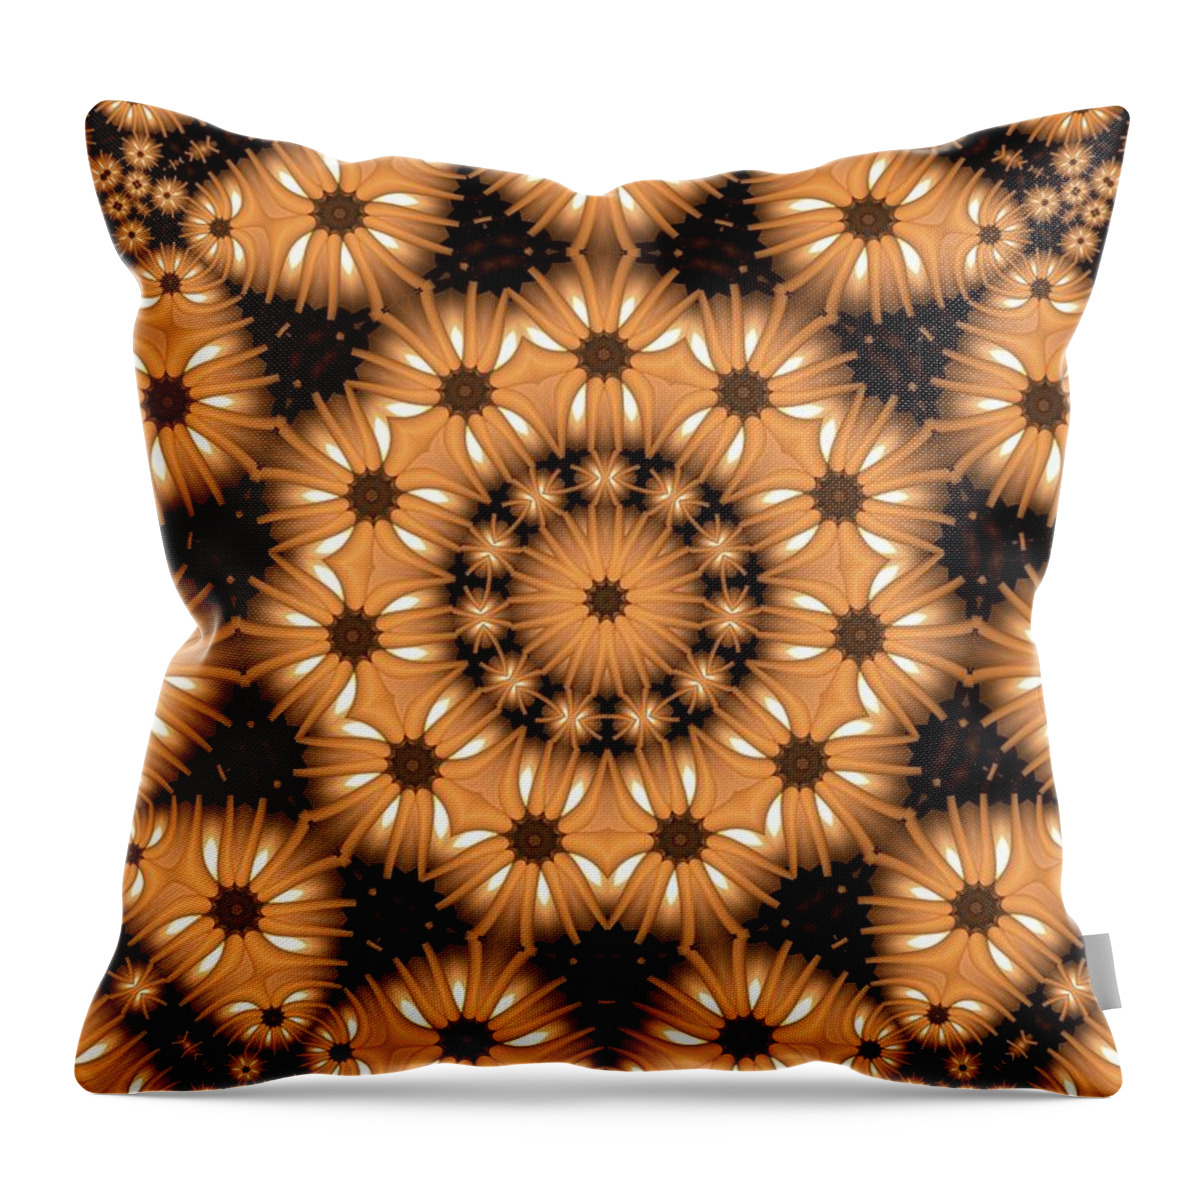 Kaleidoscope Throw Pillow featuring the digital art Kaleidoscope 131 by Ronald Bissett